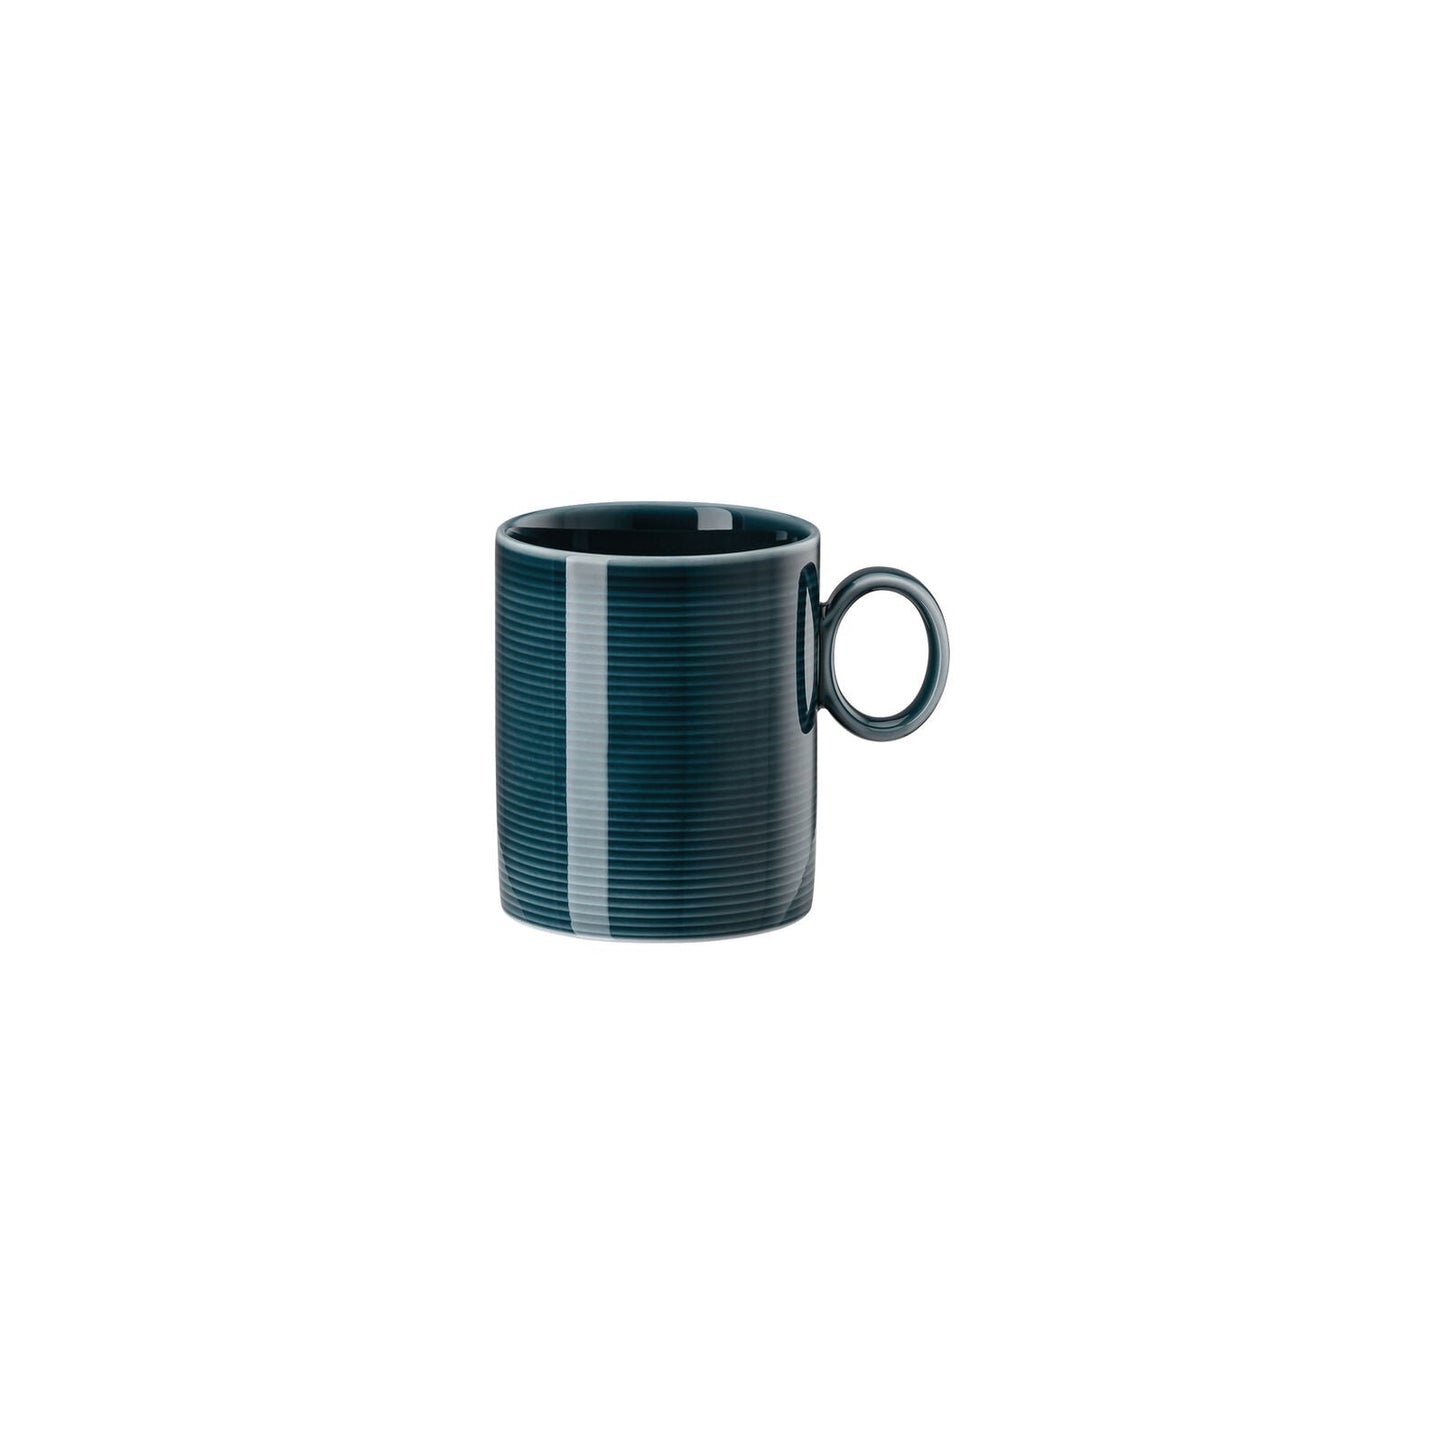 Mug with Handle Large - 4 Units